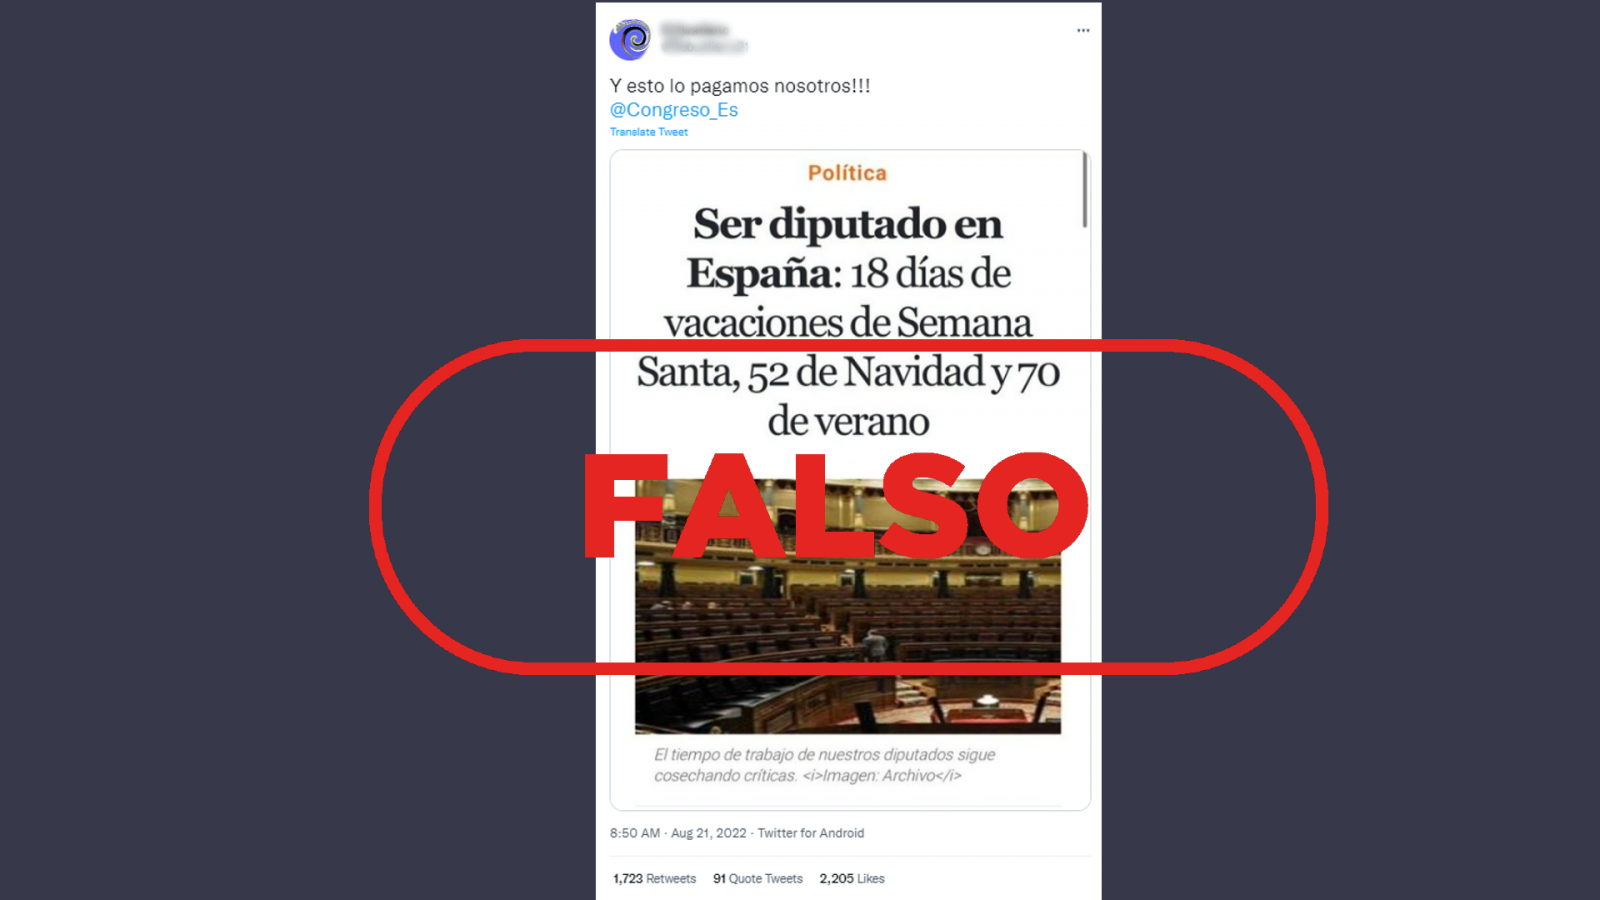 Mensaje de Twitter que expone unas cifras para hacer referencia a las ¿vacaciones¿ de los diputados españoles, con el sello 'Falso' en rojo